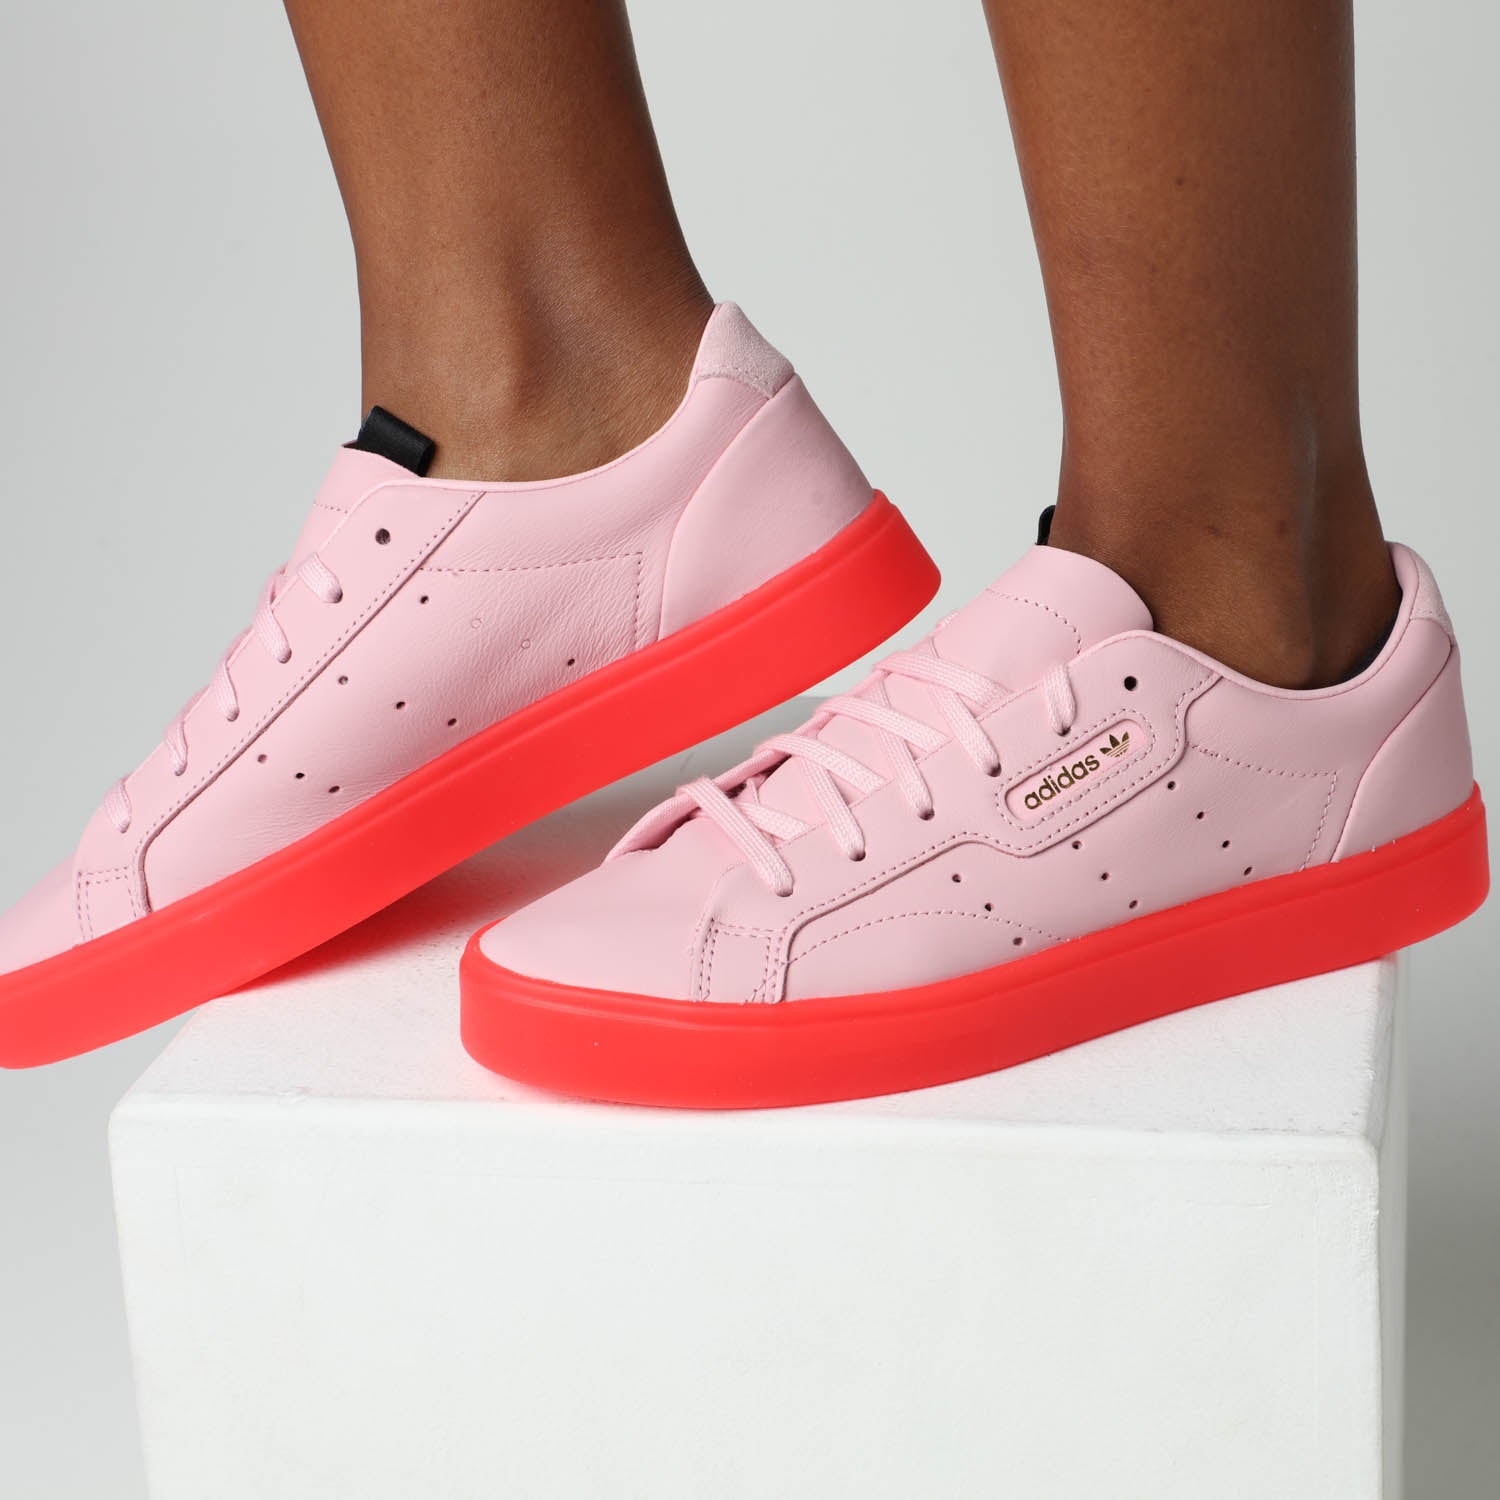 adidas sleek pink red